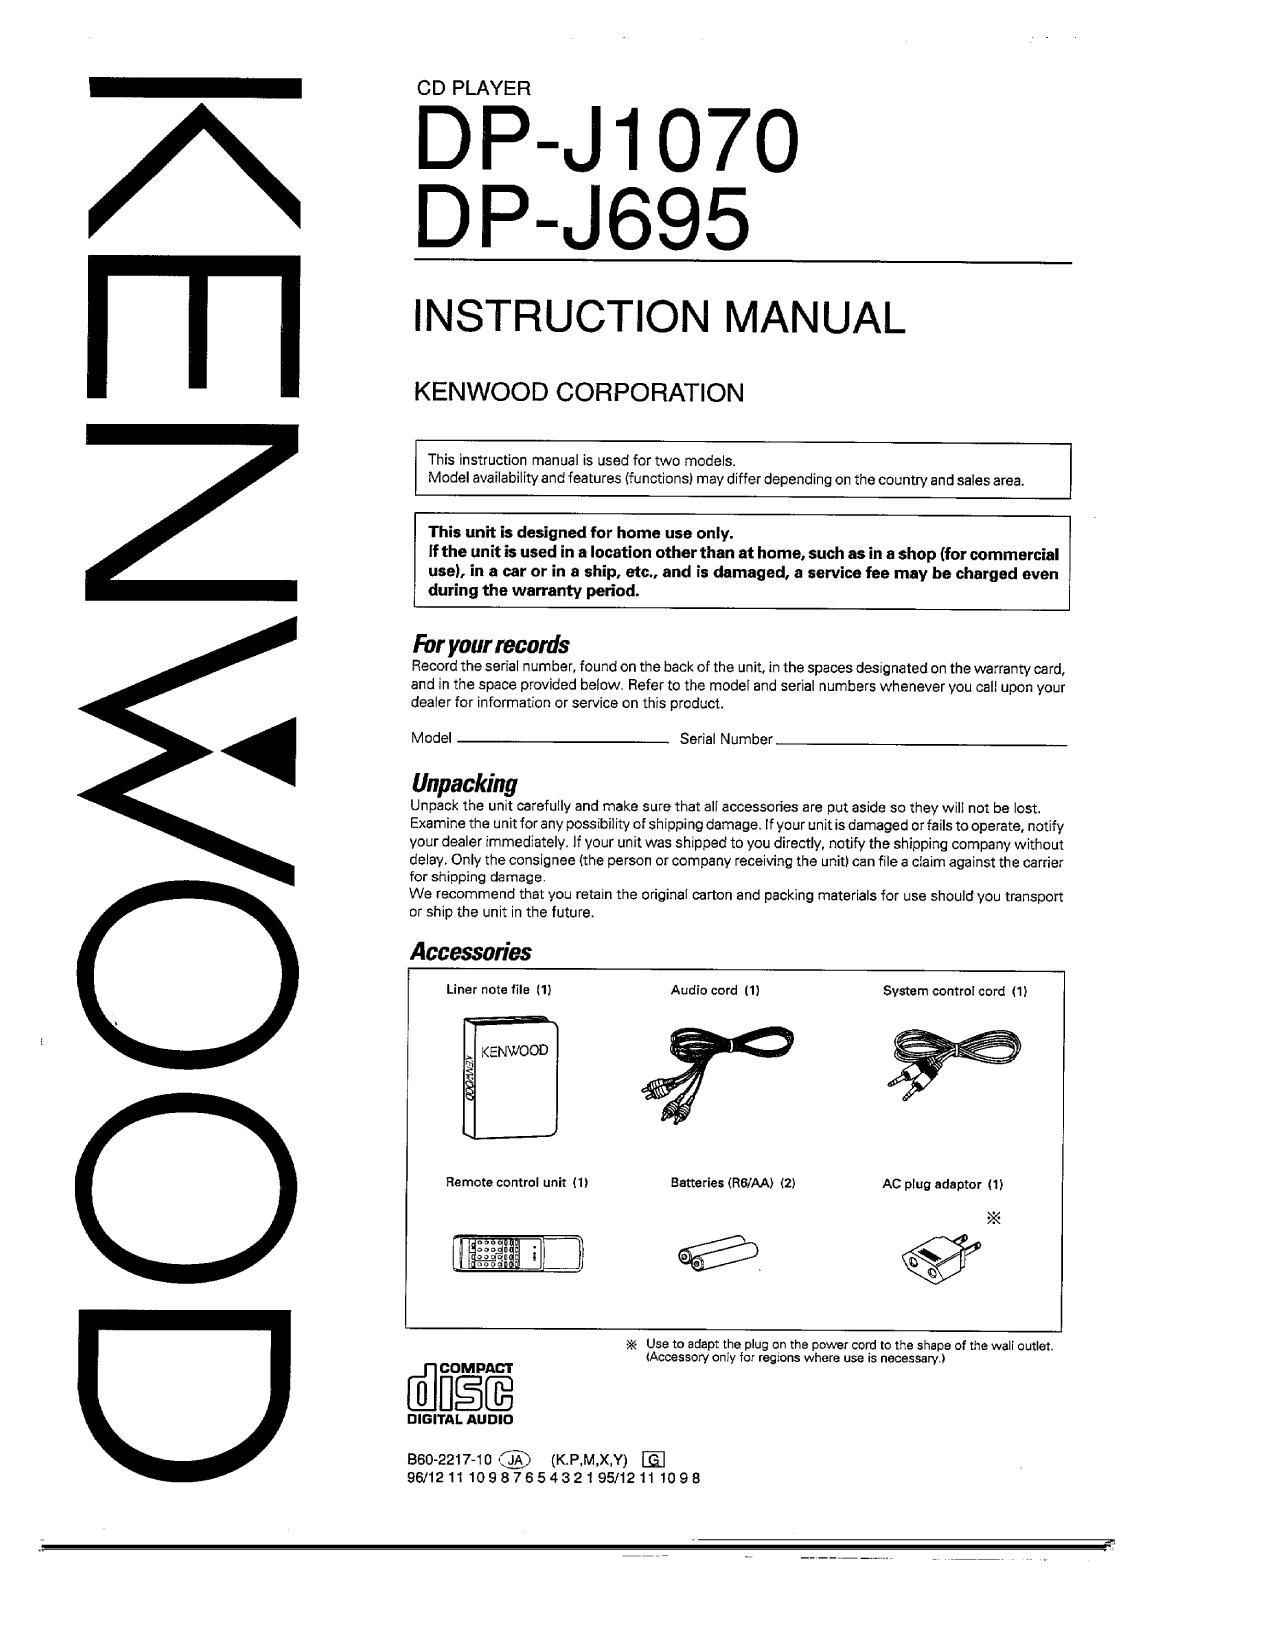 Kenwood DPJ 1070 Owners Manual